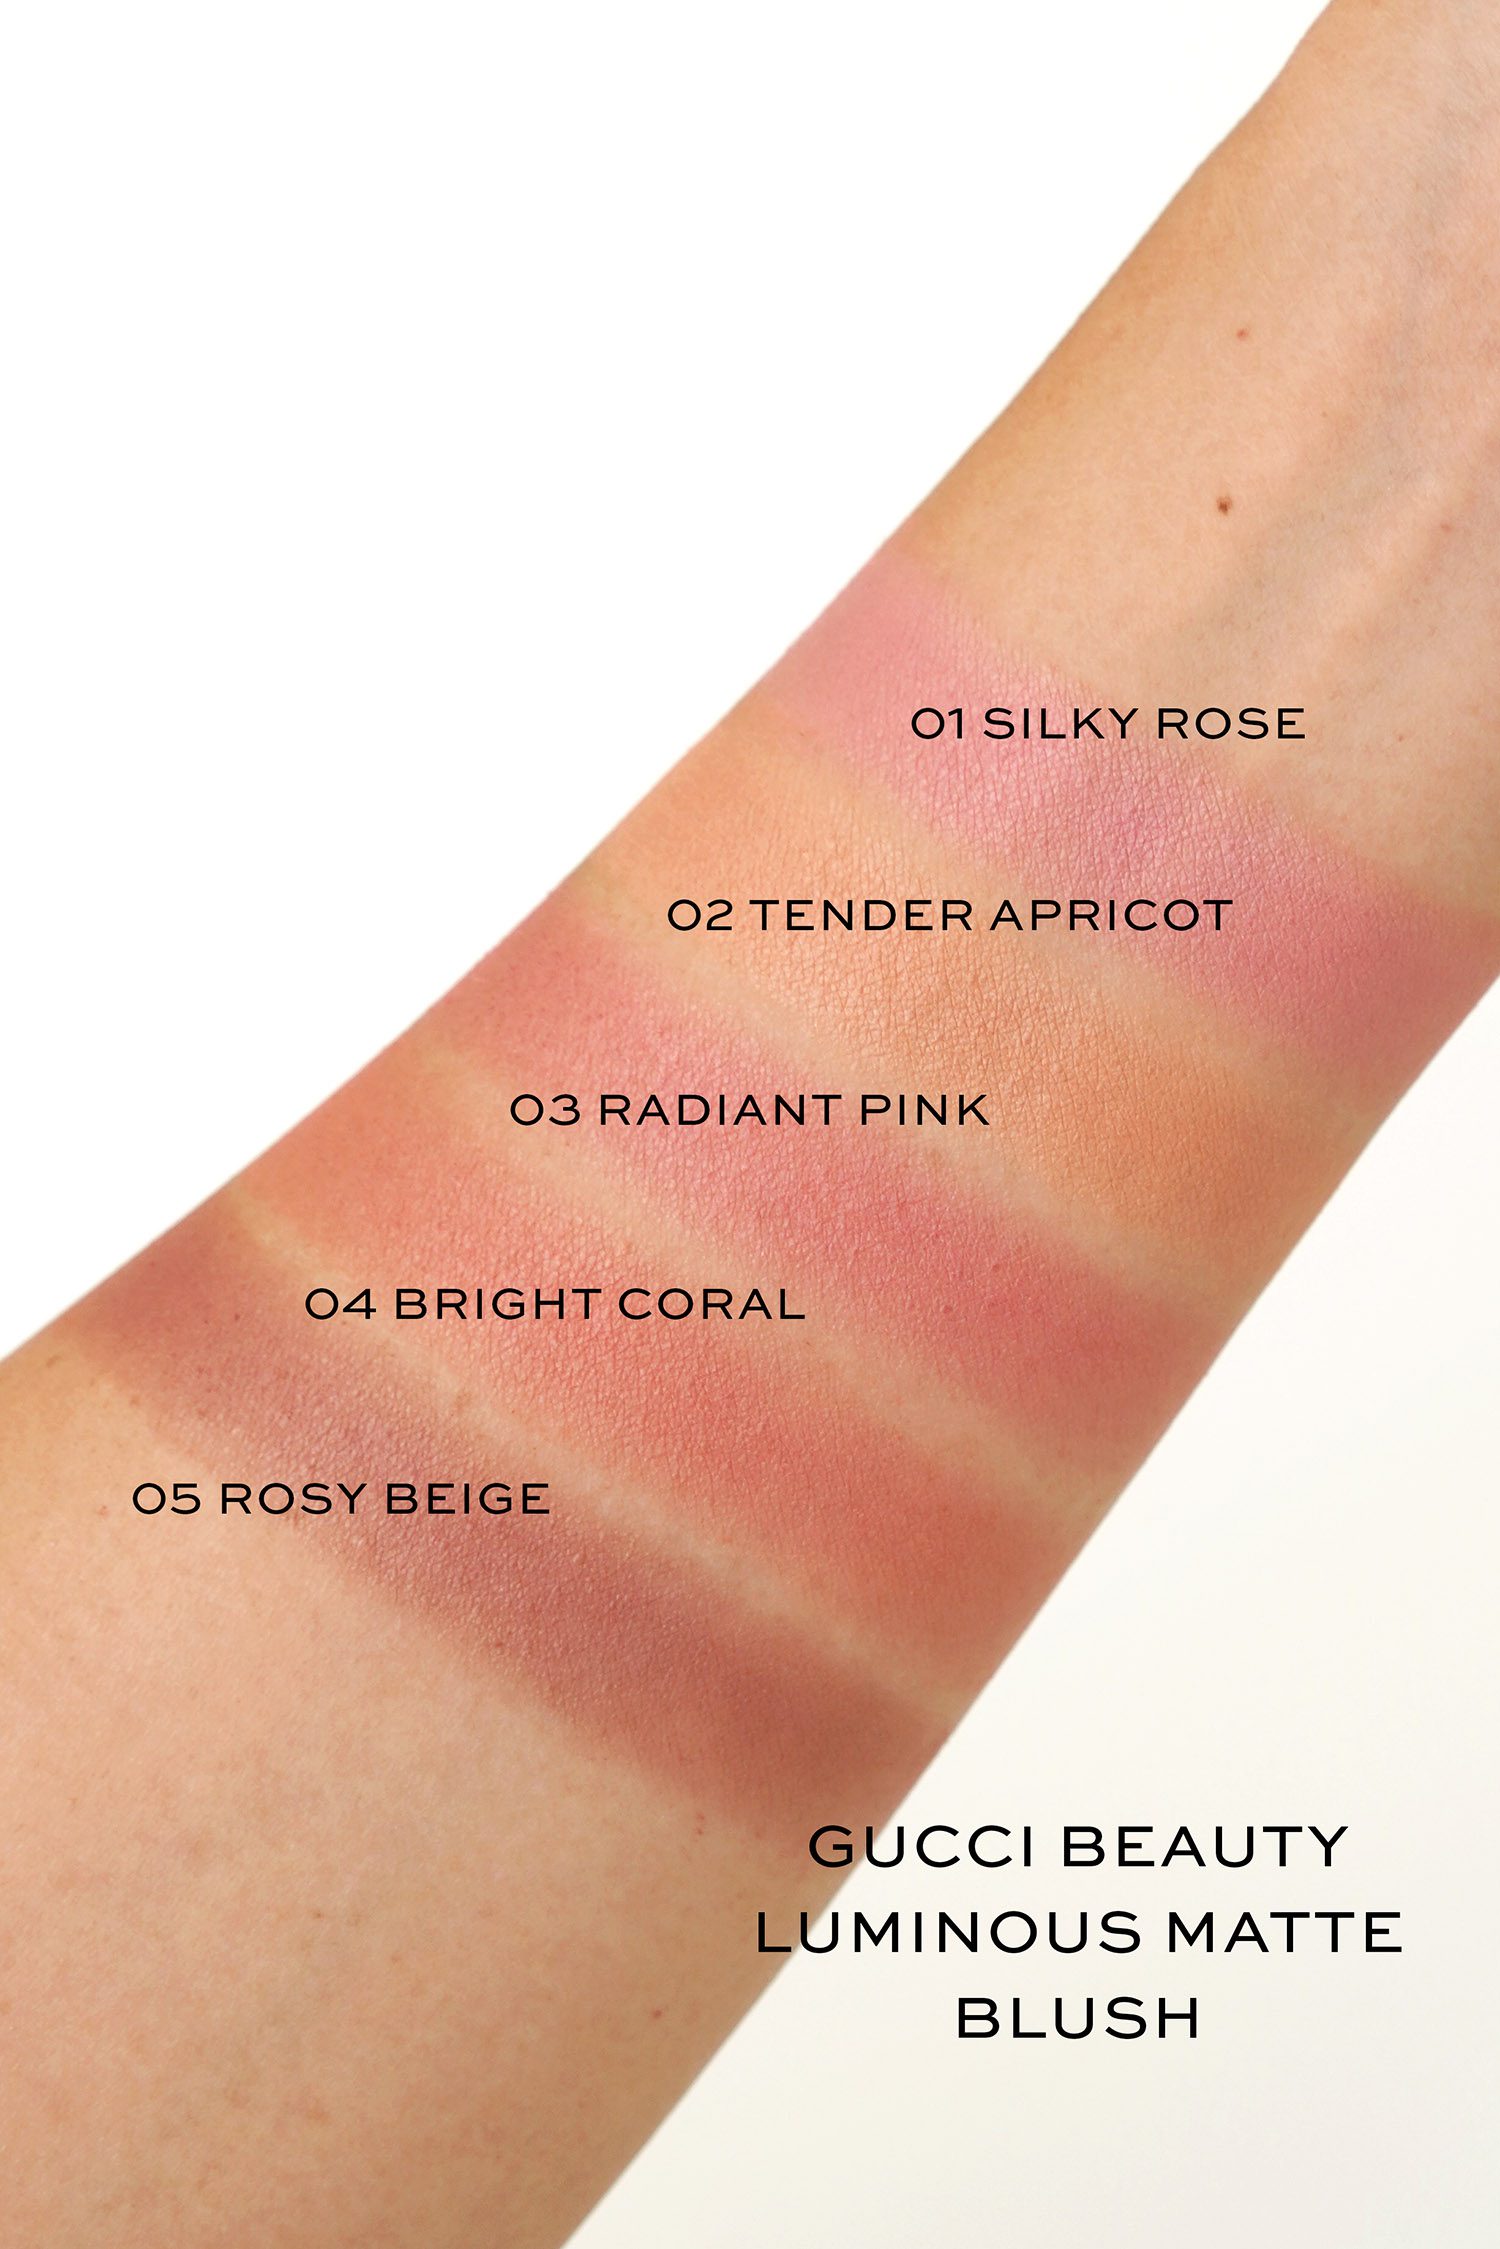 Gucci Beauty Luminous Matte Beauty Blush - The Beauty Look Book